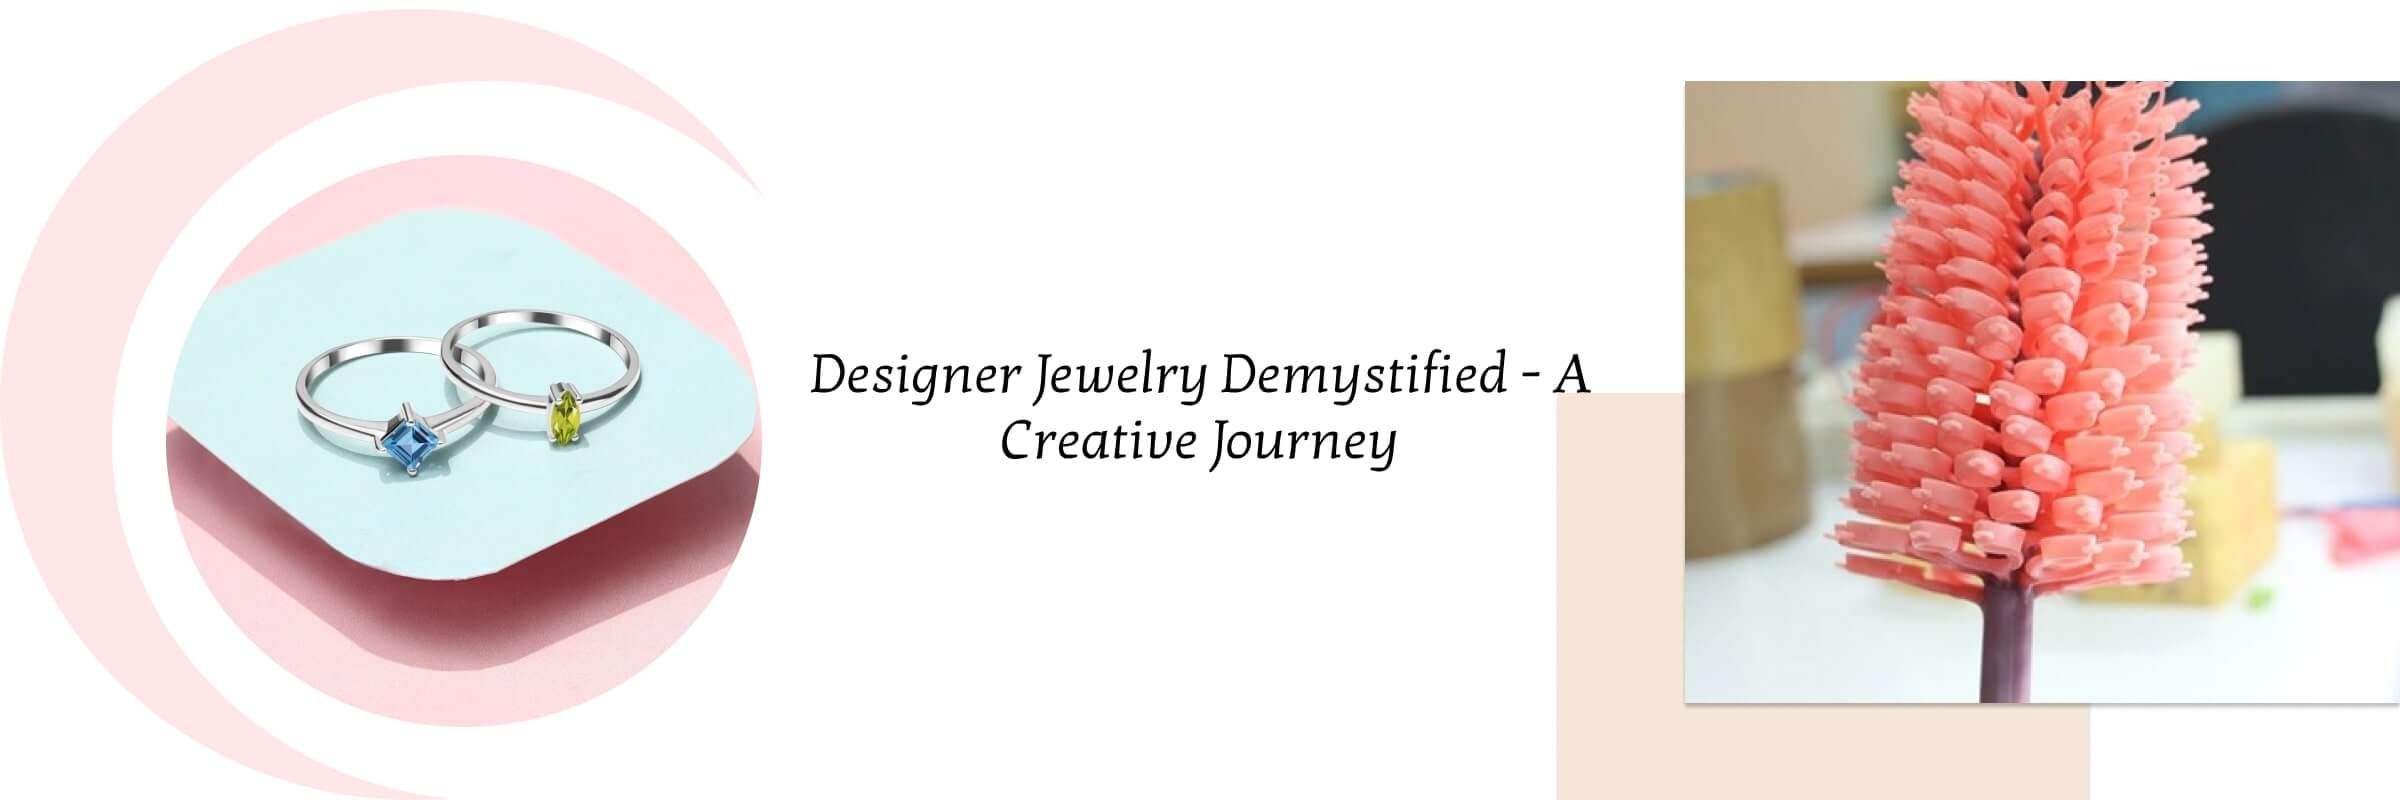 Understanding Designer Jewelry